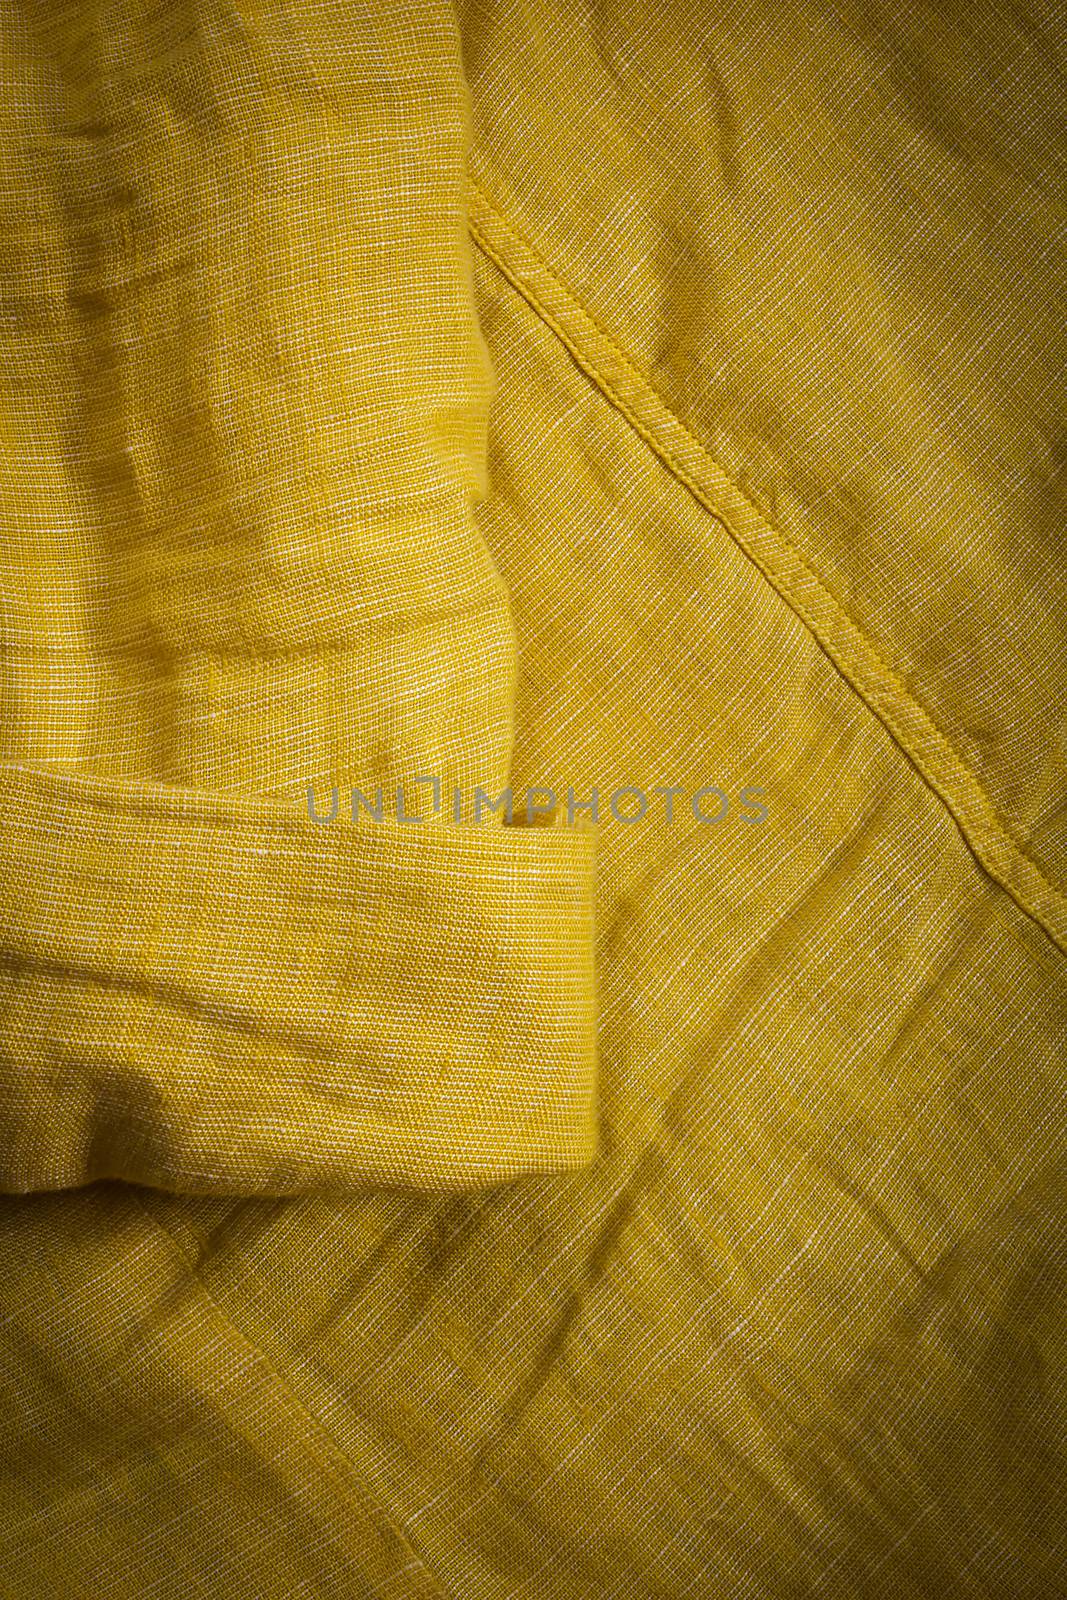 Close up of shirt yellow textile texture